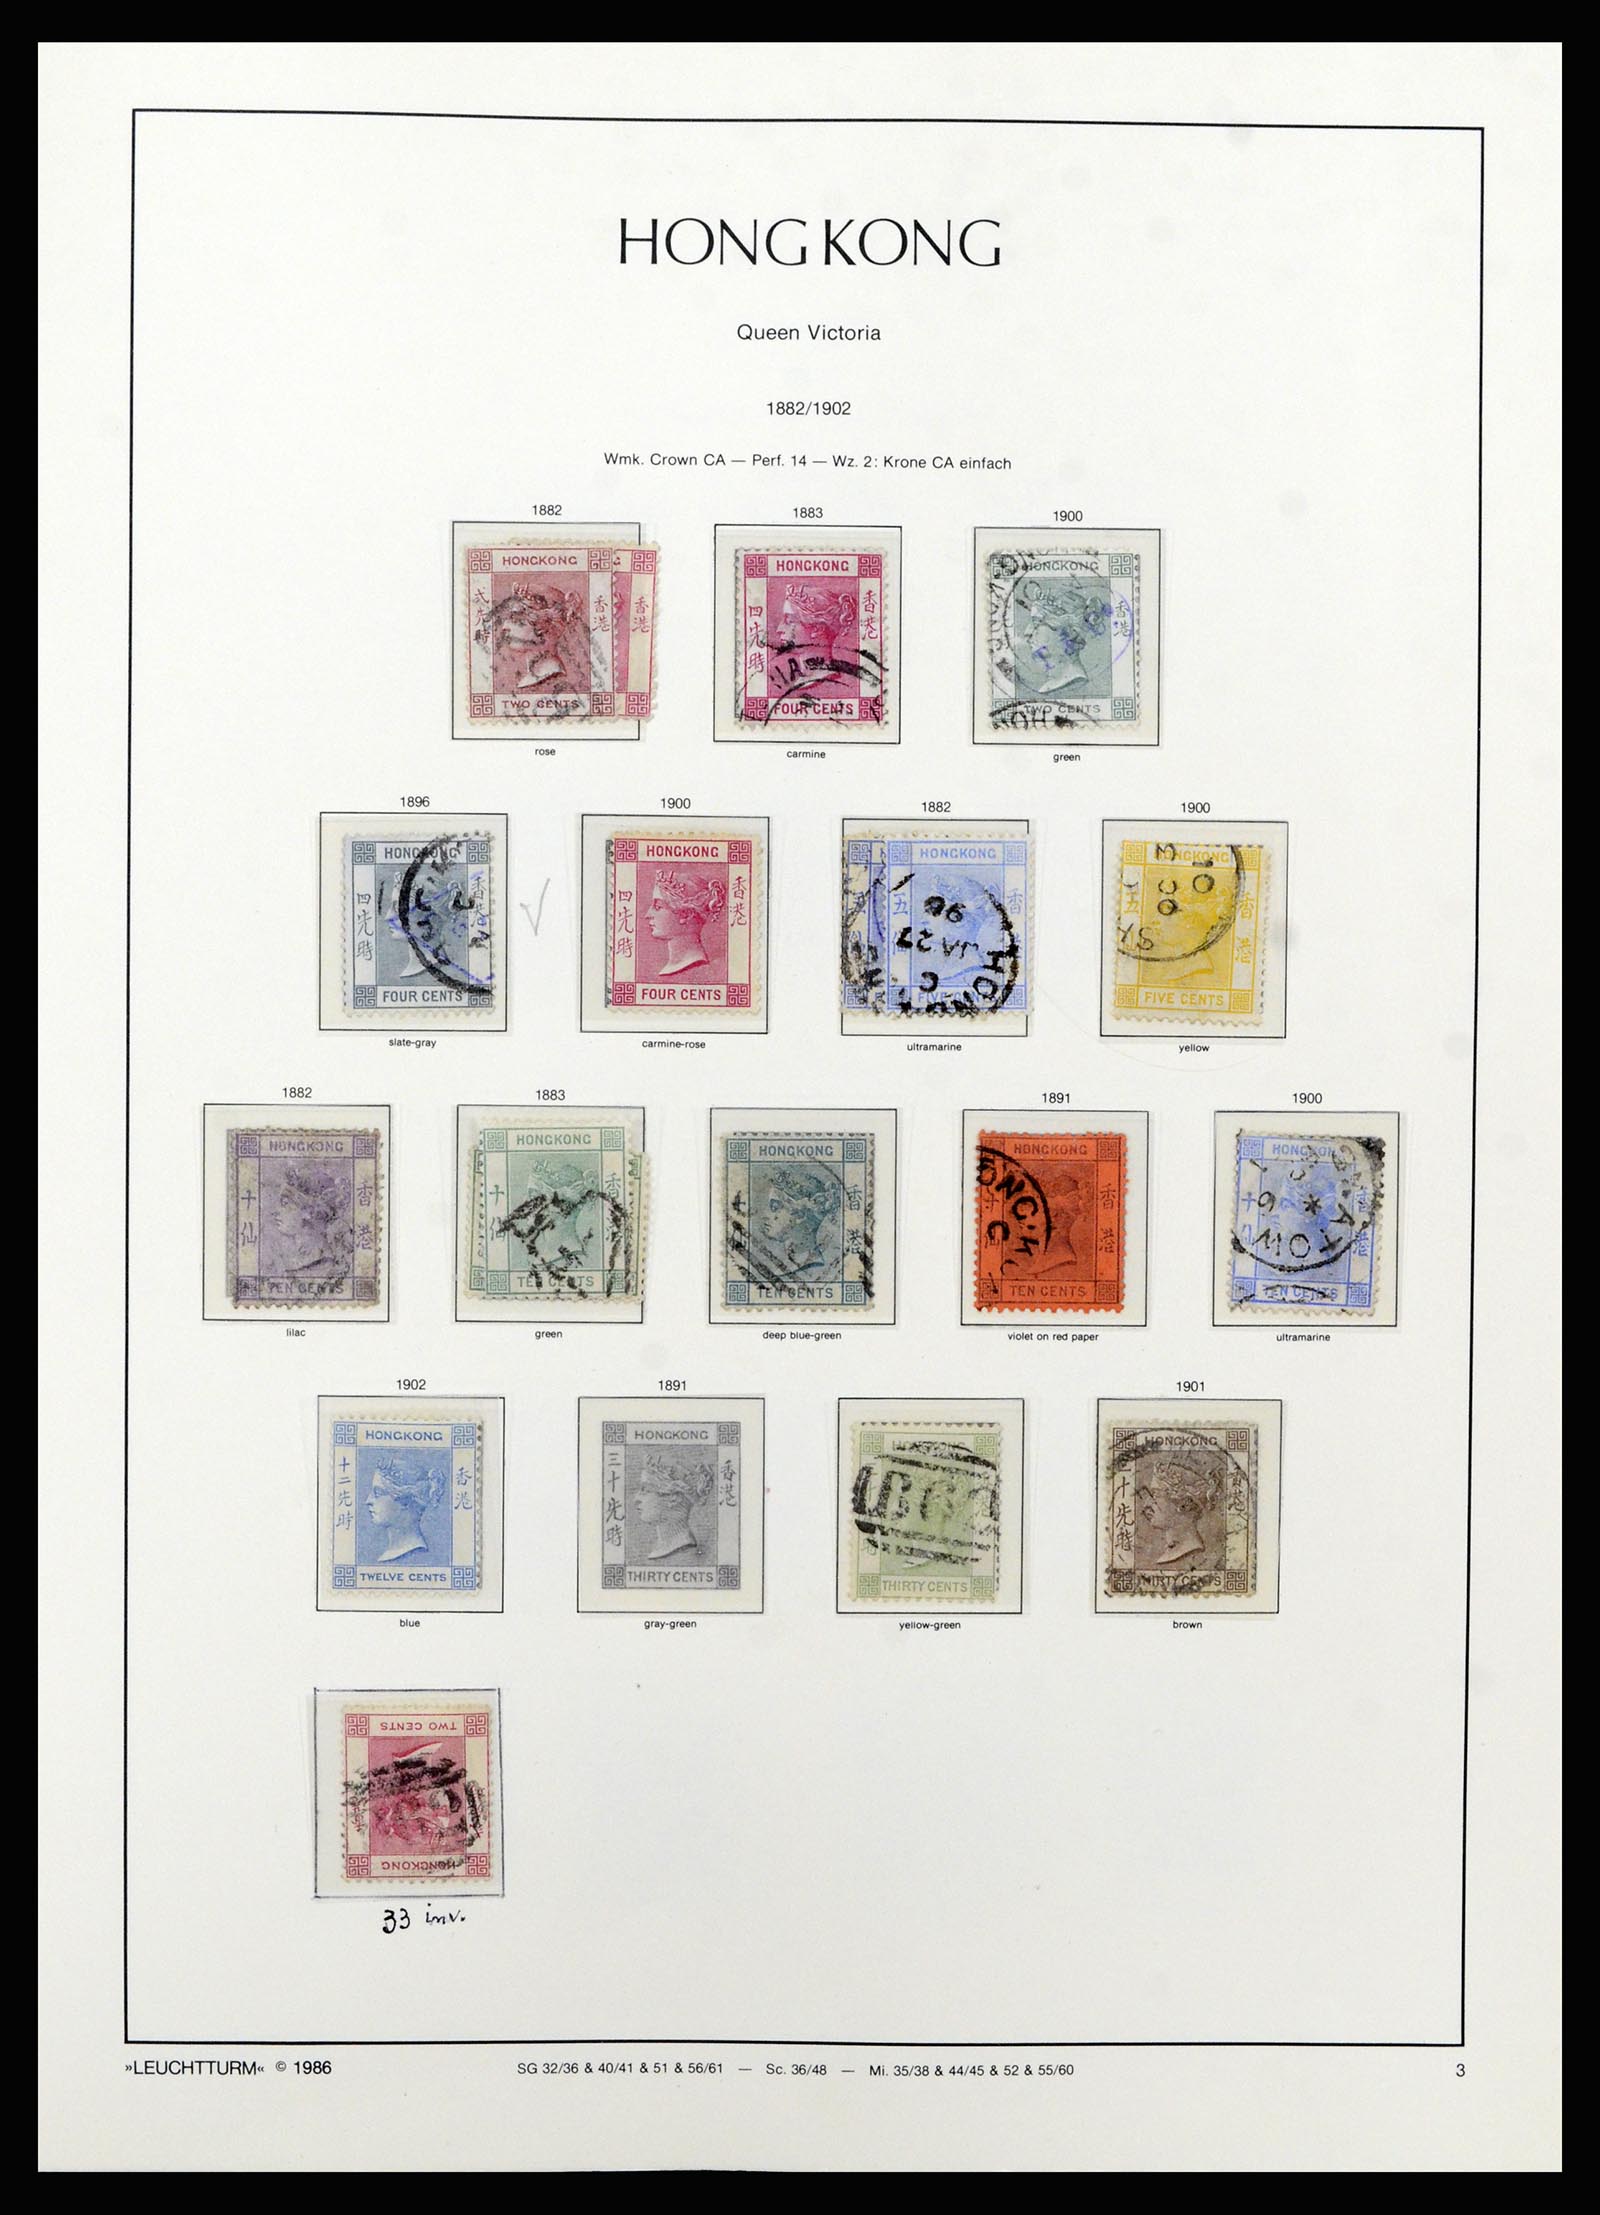 37070 003 - Stamp collection 37070 Hong Kong 1862-1996.